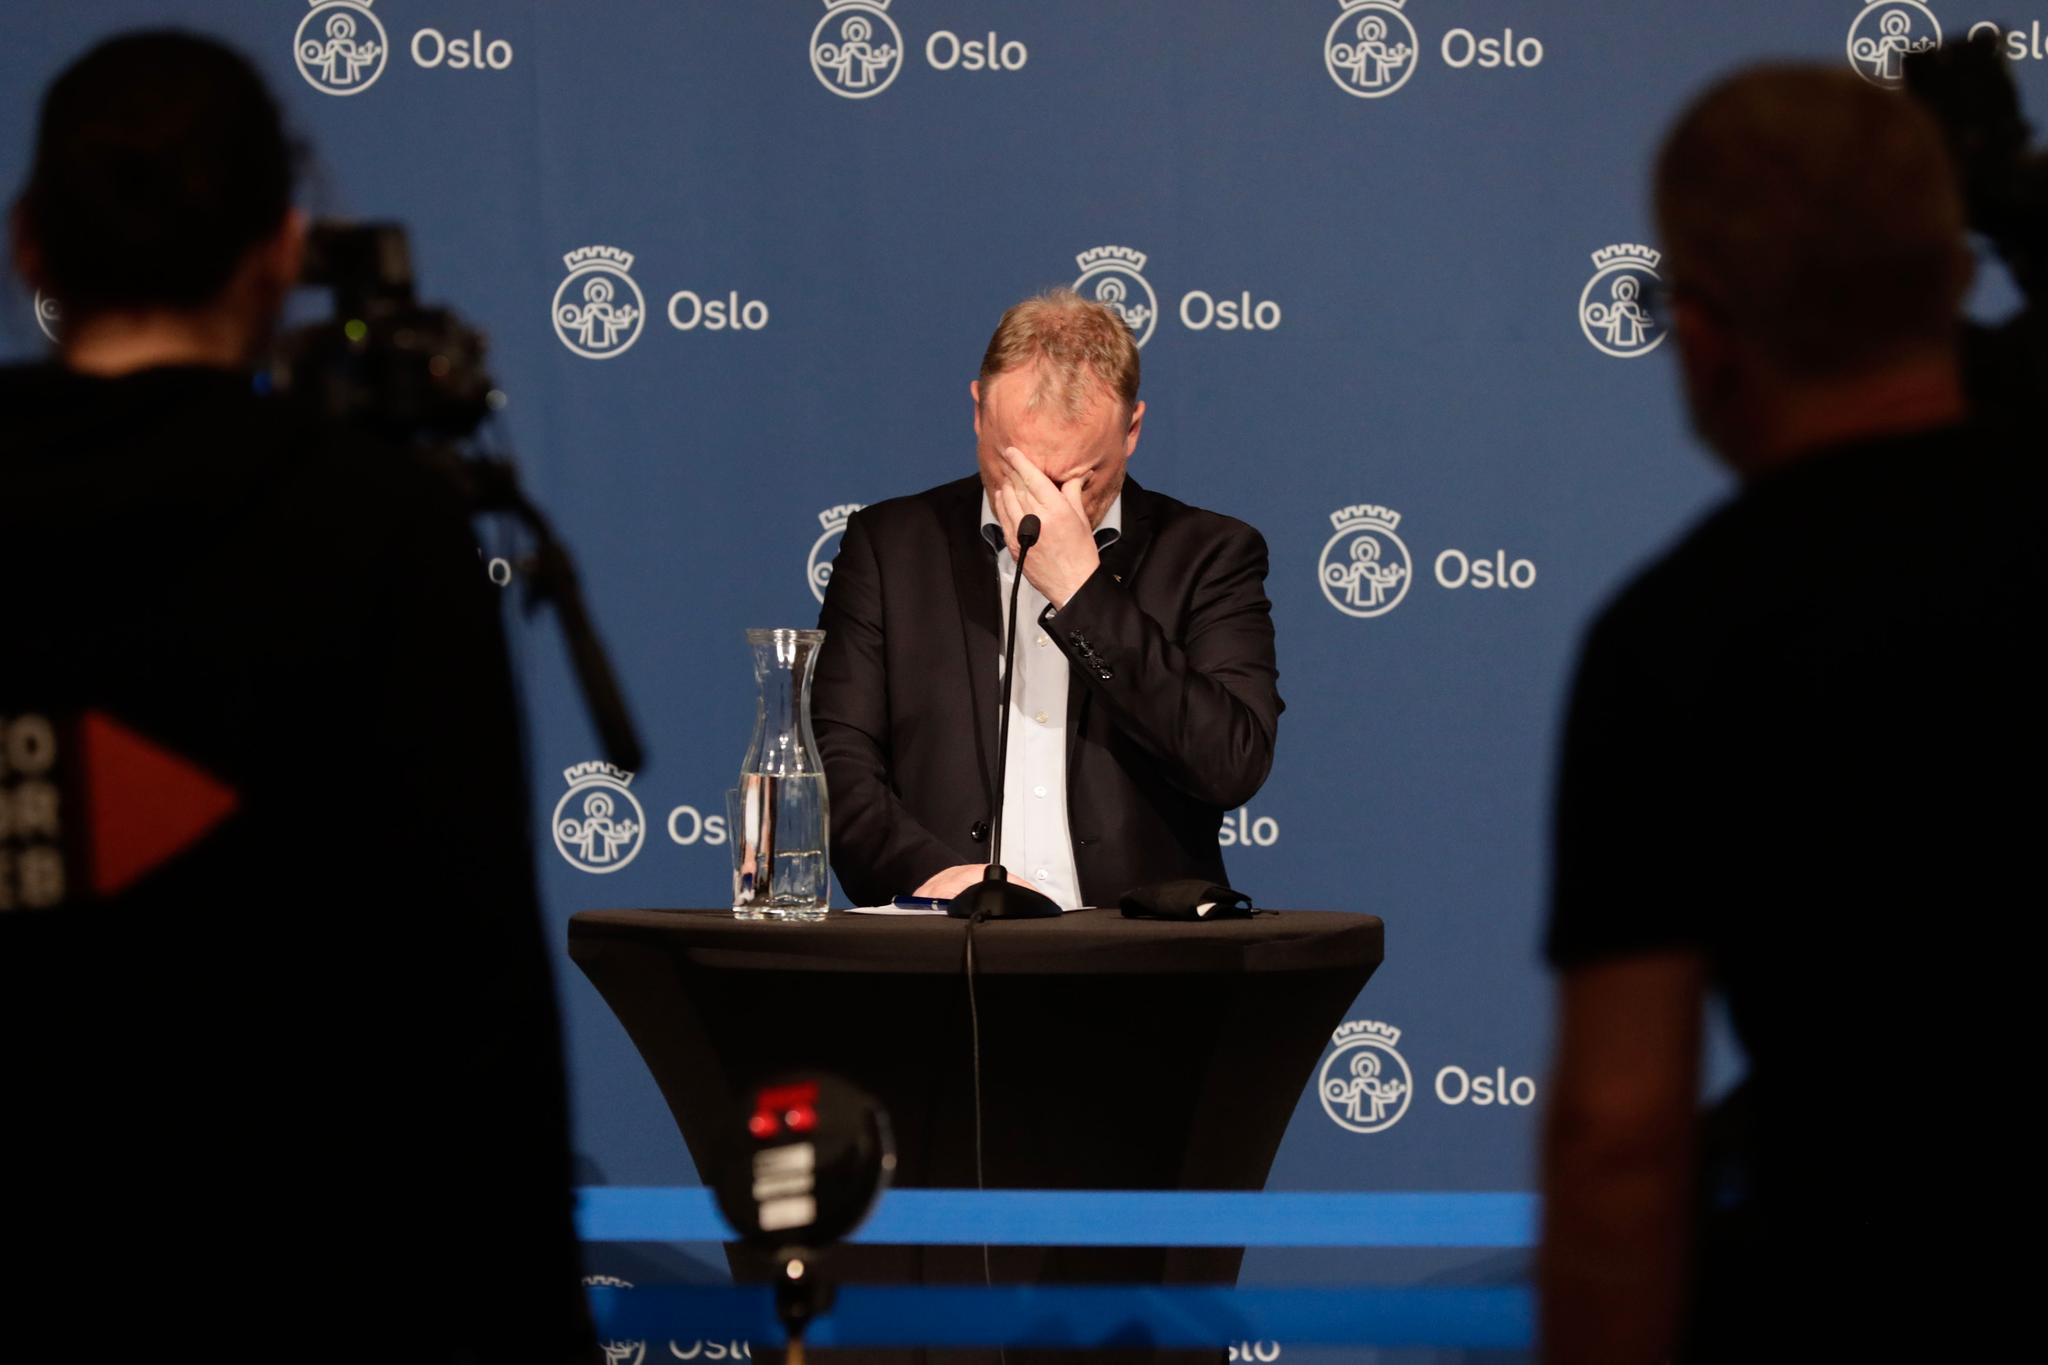 Byrådsleder Raymond Johansen (Ap) hadde varslet nye og strenge smittevernregler i Oslo før pressekonferansen mandag ettermiddag.